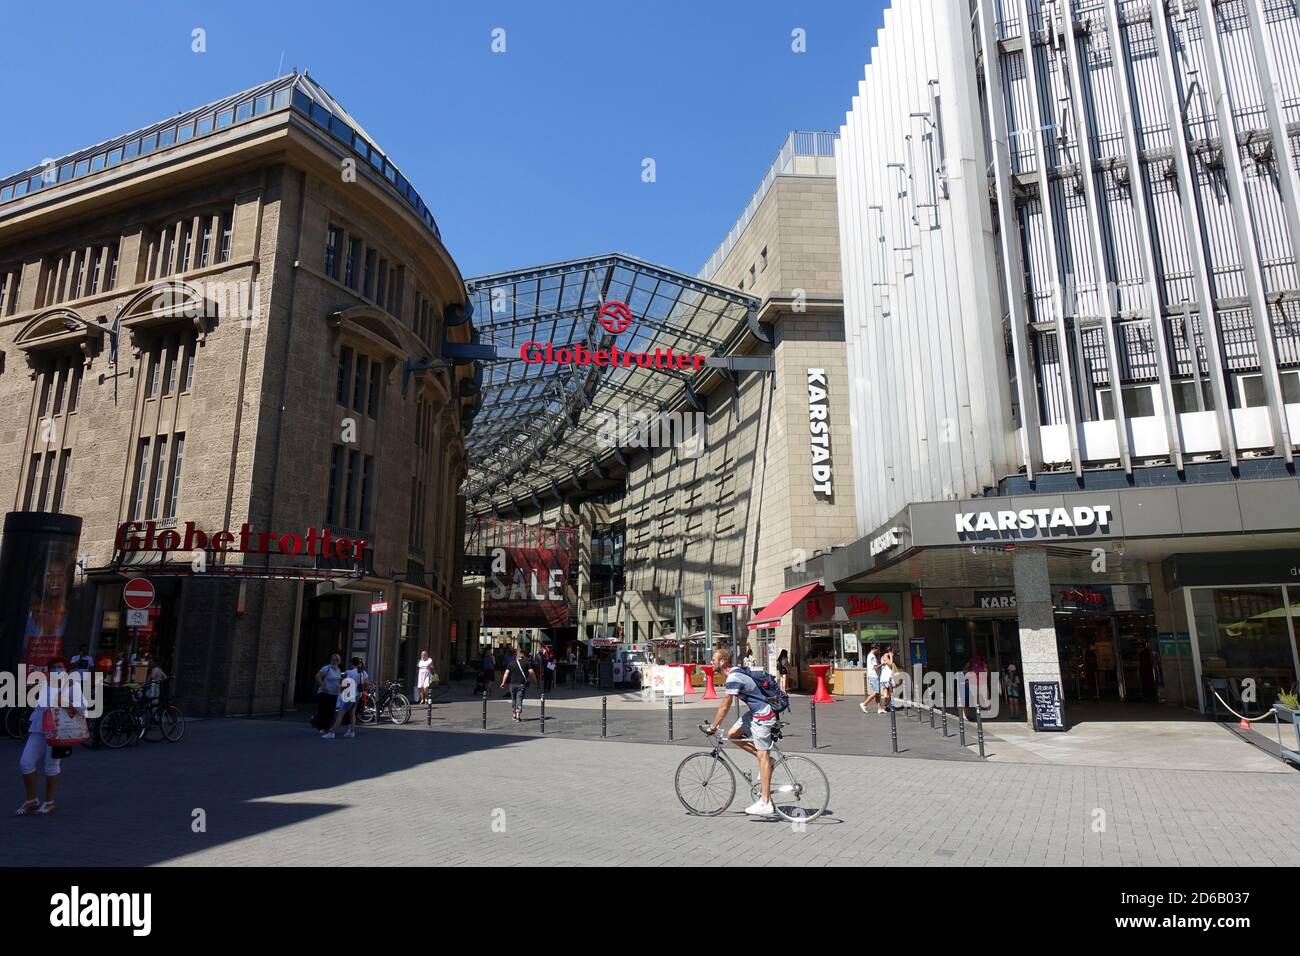 Kaufhäuser Globetrotter und Karstadt, jetzt Galeria, in der Innenstadt Köln, Nordrhein-Westfalen, Allemagne Banque D'Images